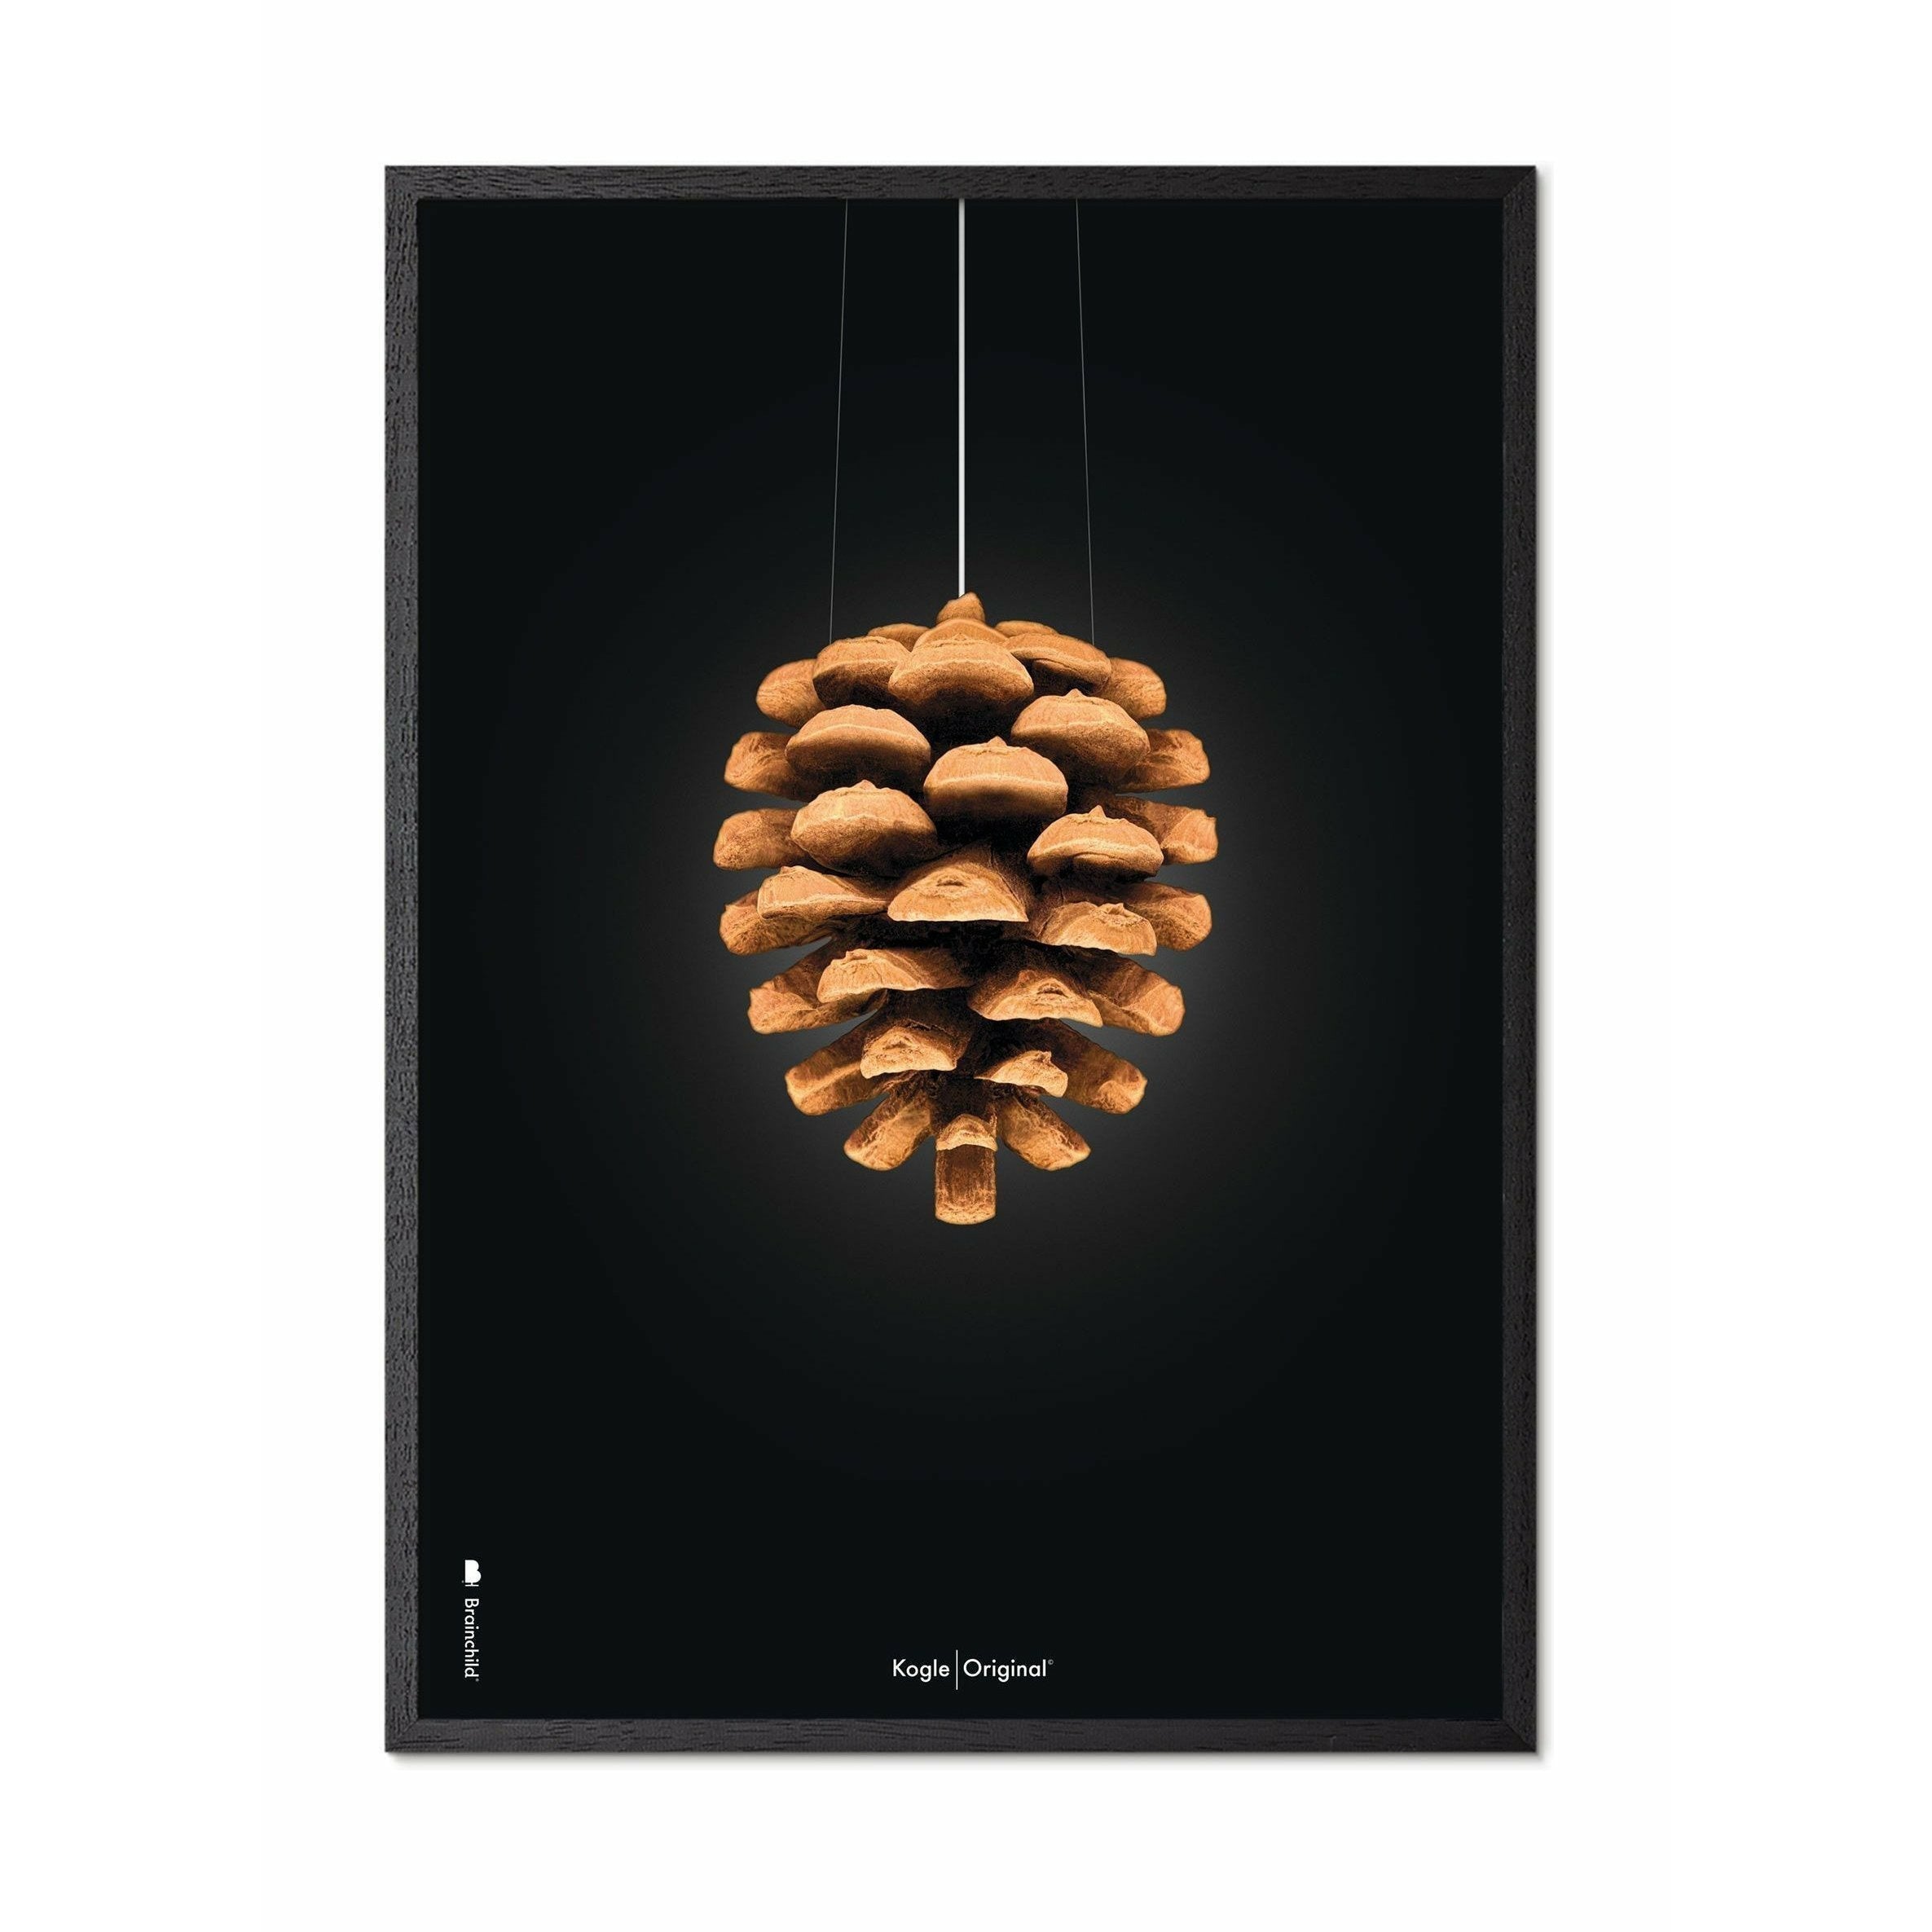 Póster clásico de cono de pino de creación, marco en madera lacada negra 50x70 cm, fondo negro